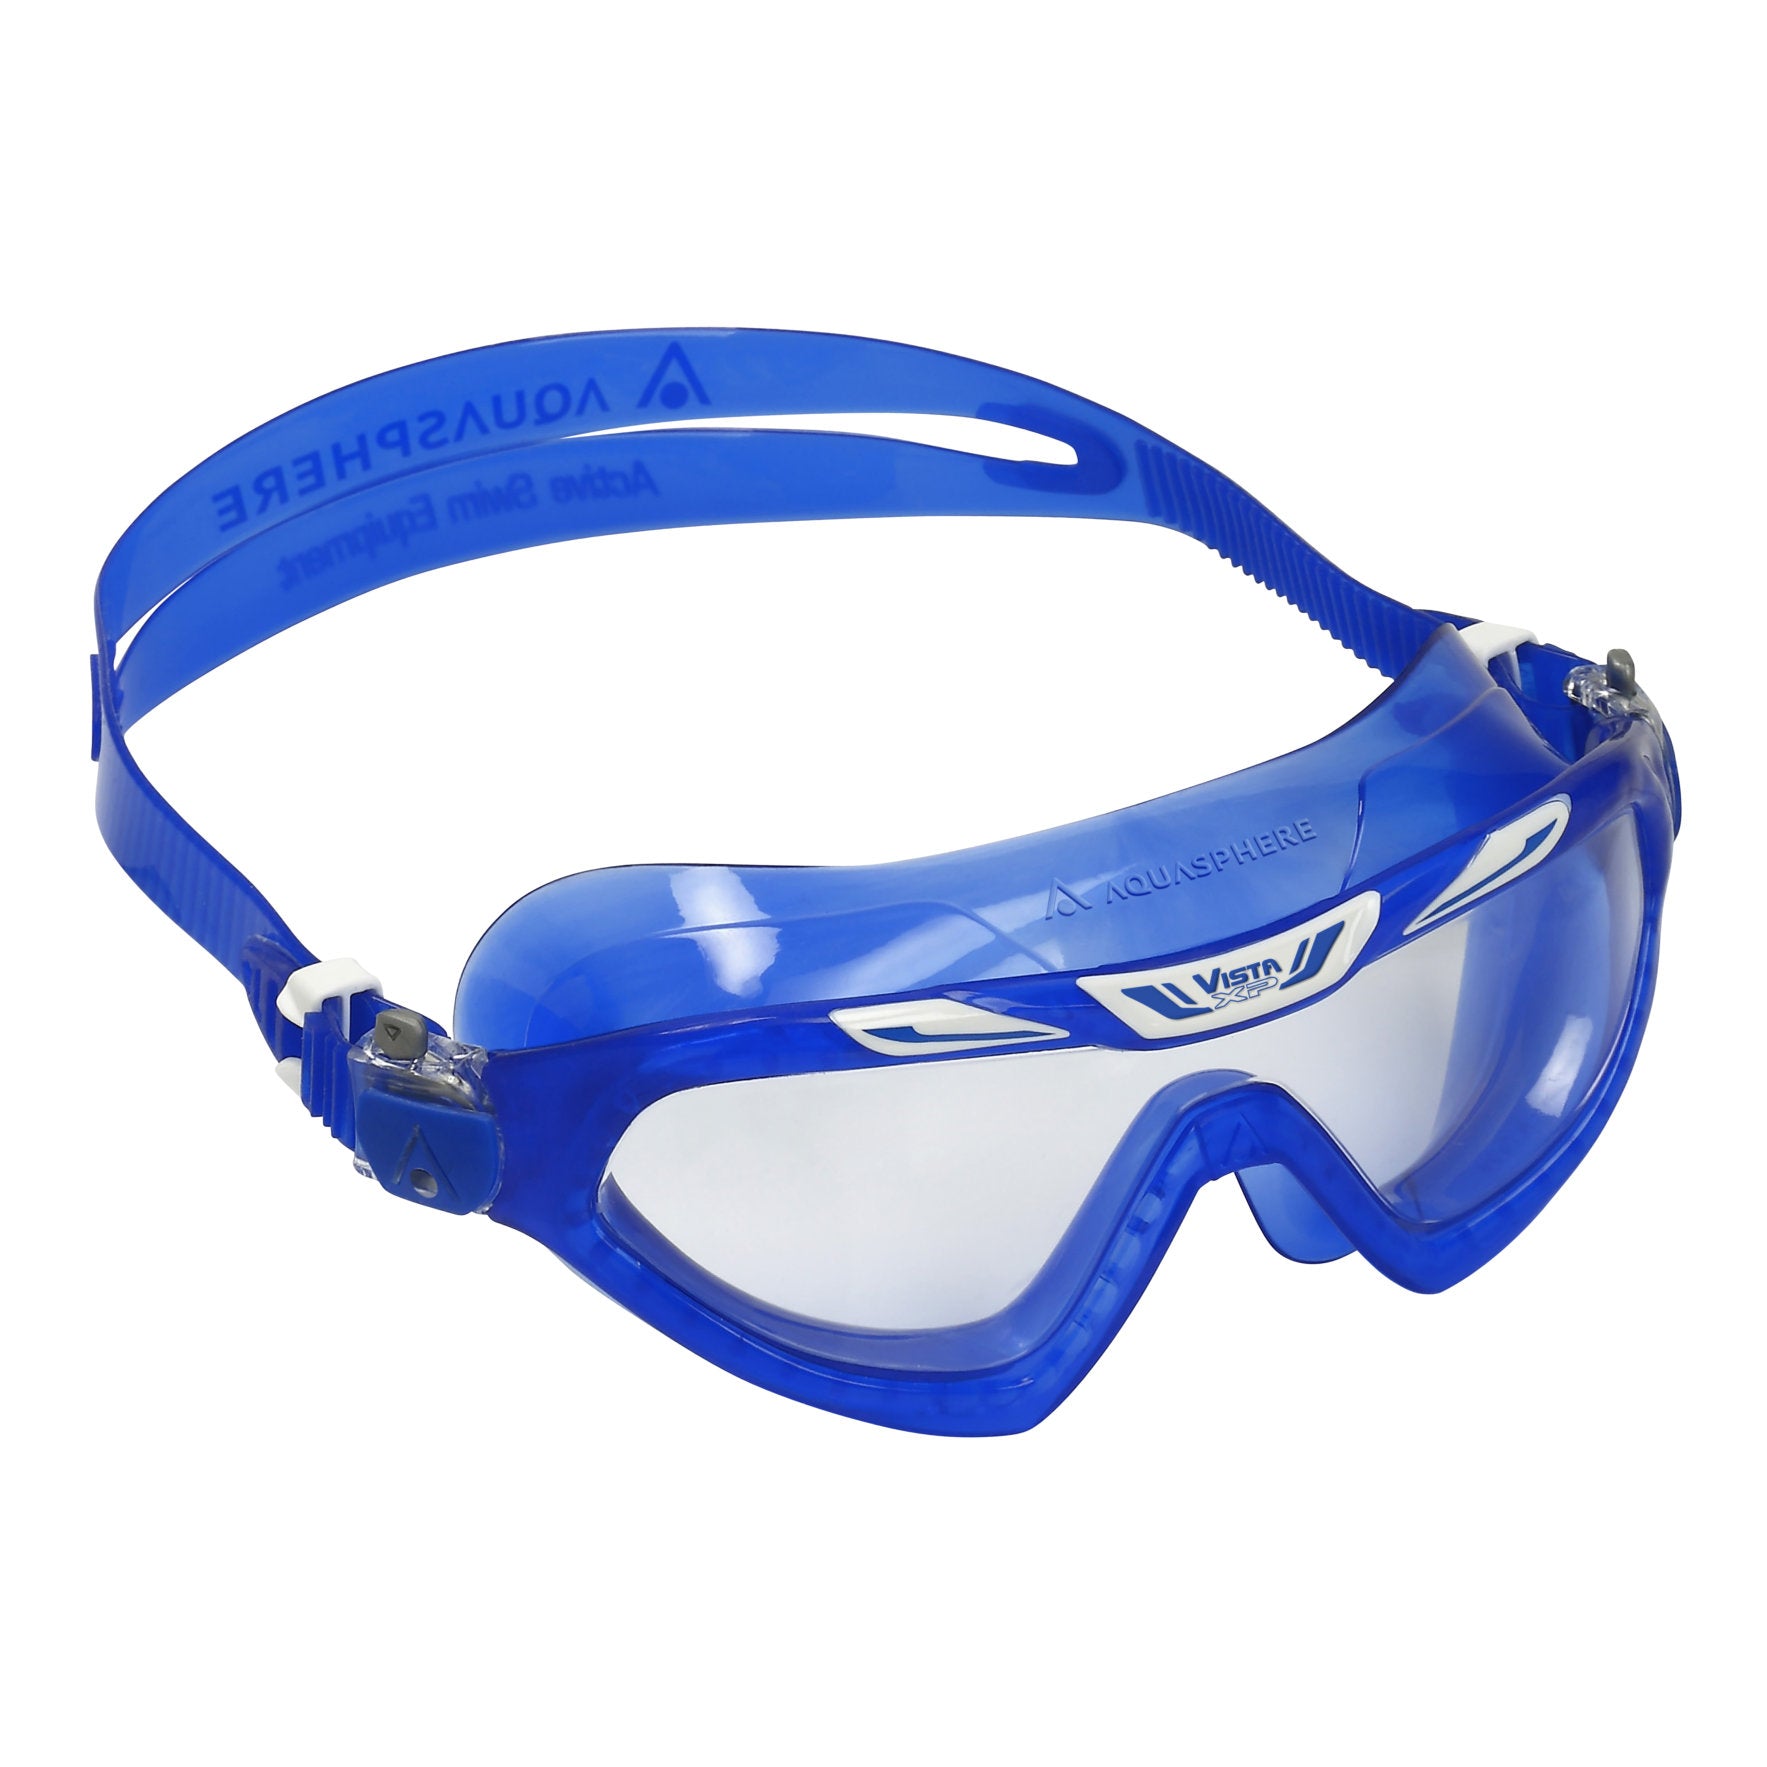 Aquasphere Vista Xp Mask